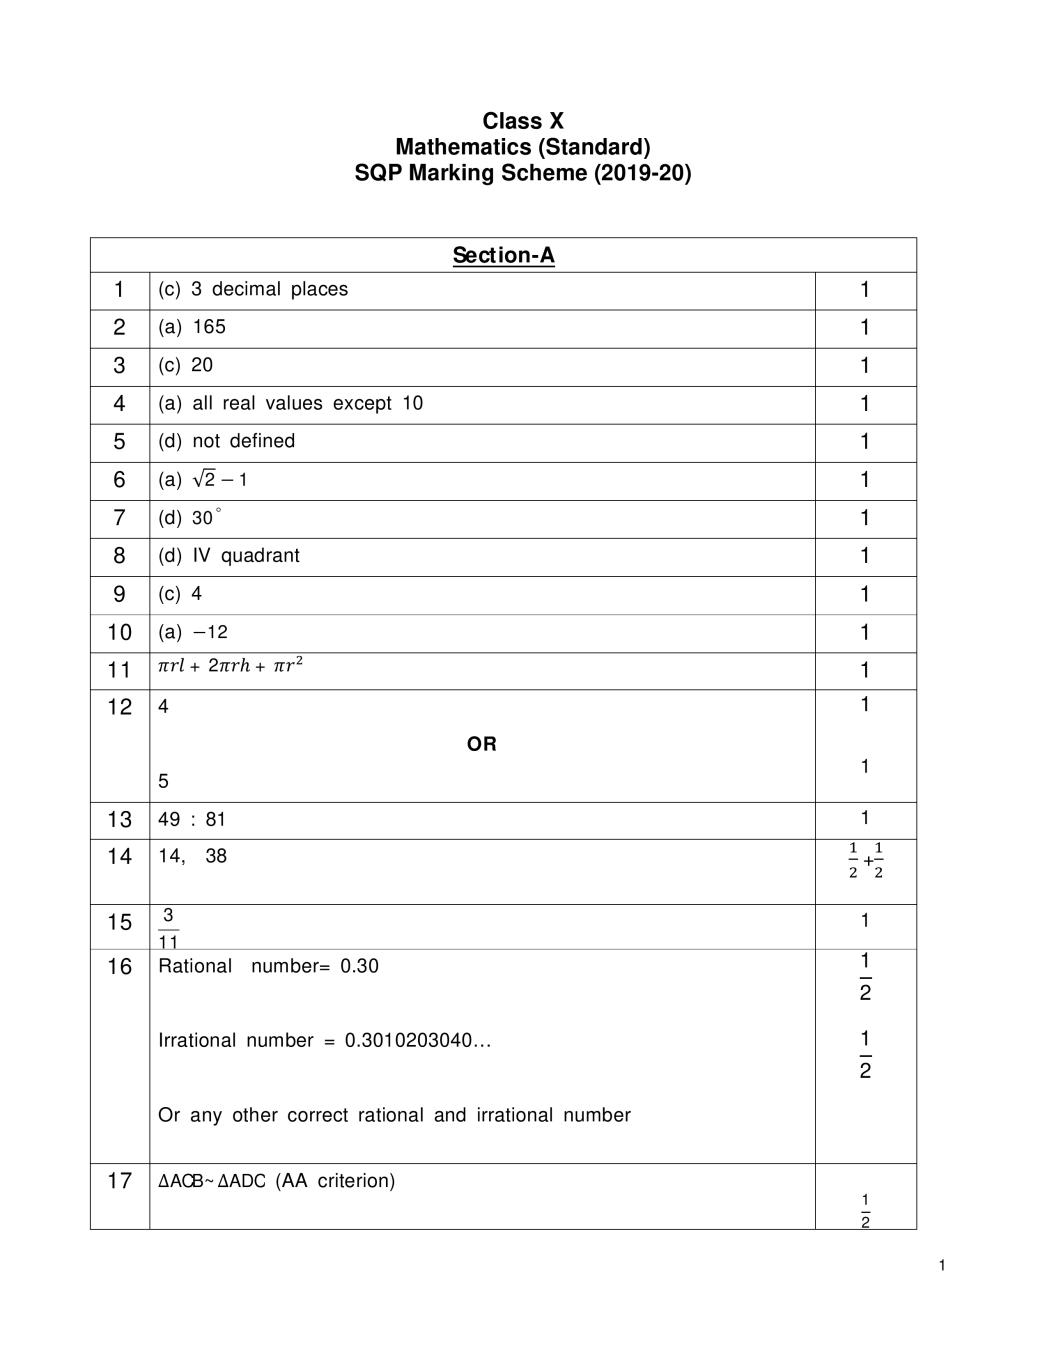 CBSE Class 10 Marking Scheme 2020 for Mathematics Standard - Page 1